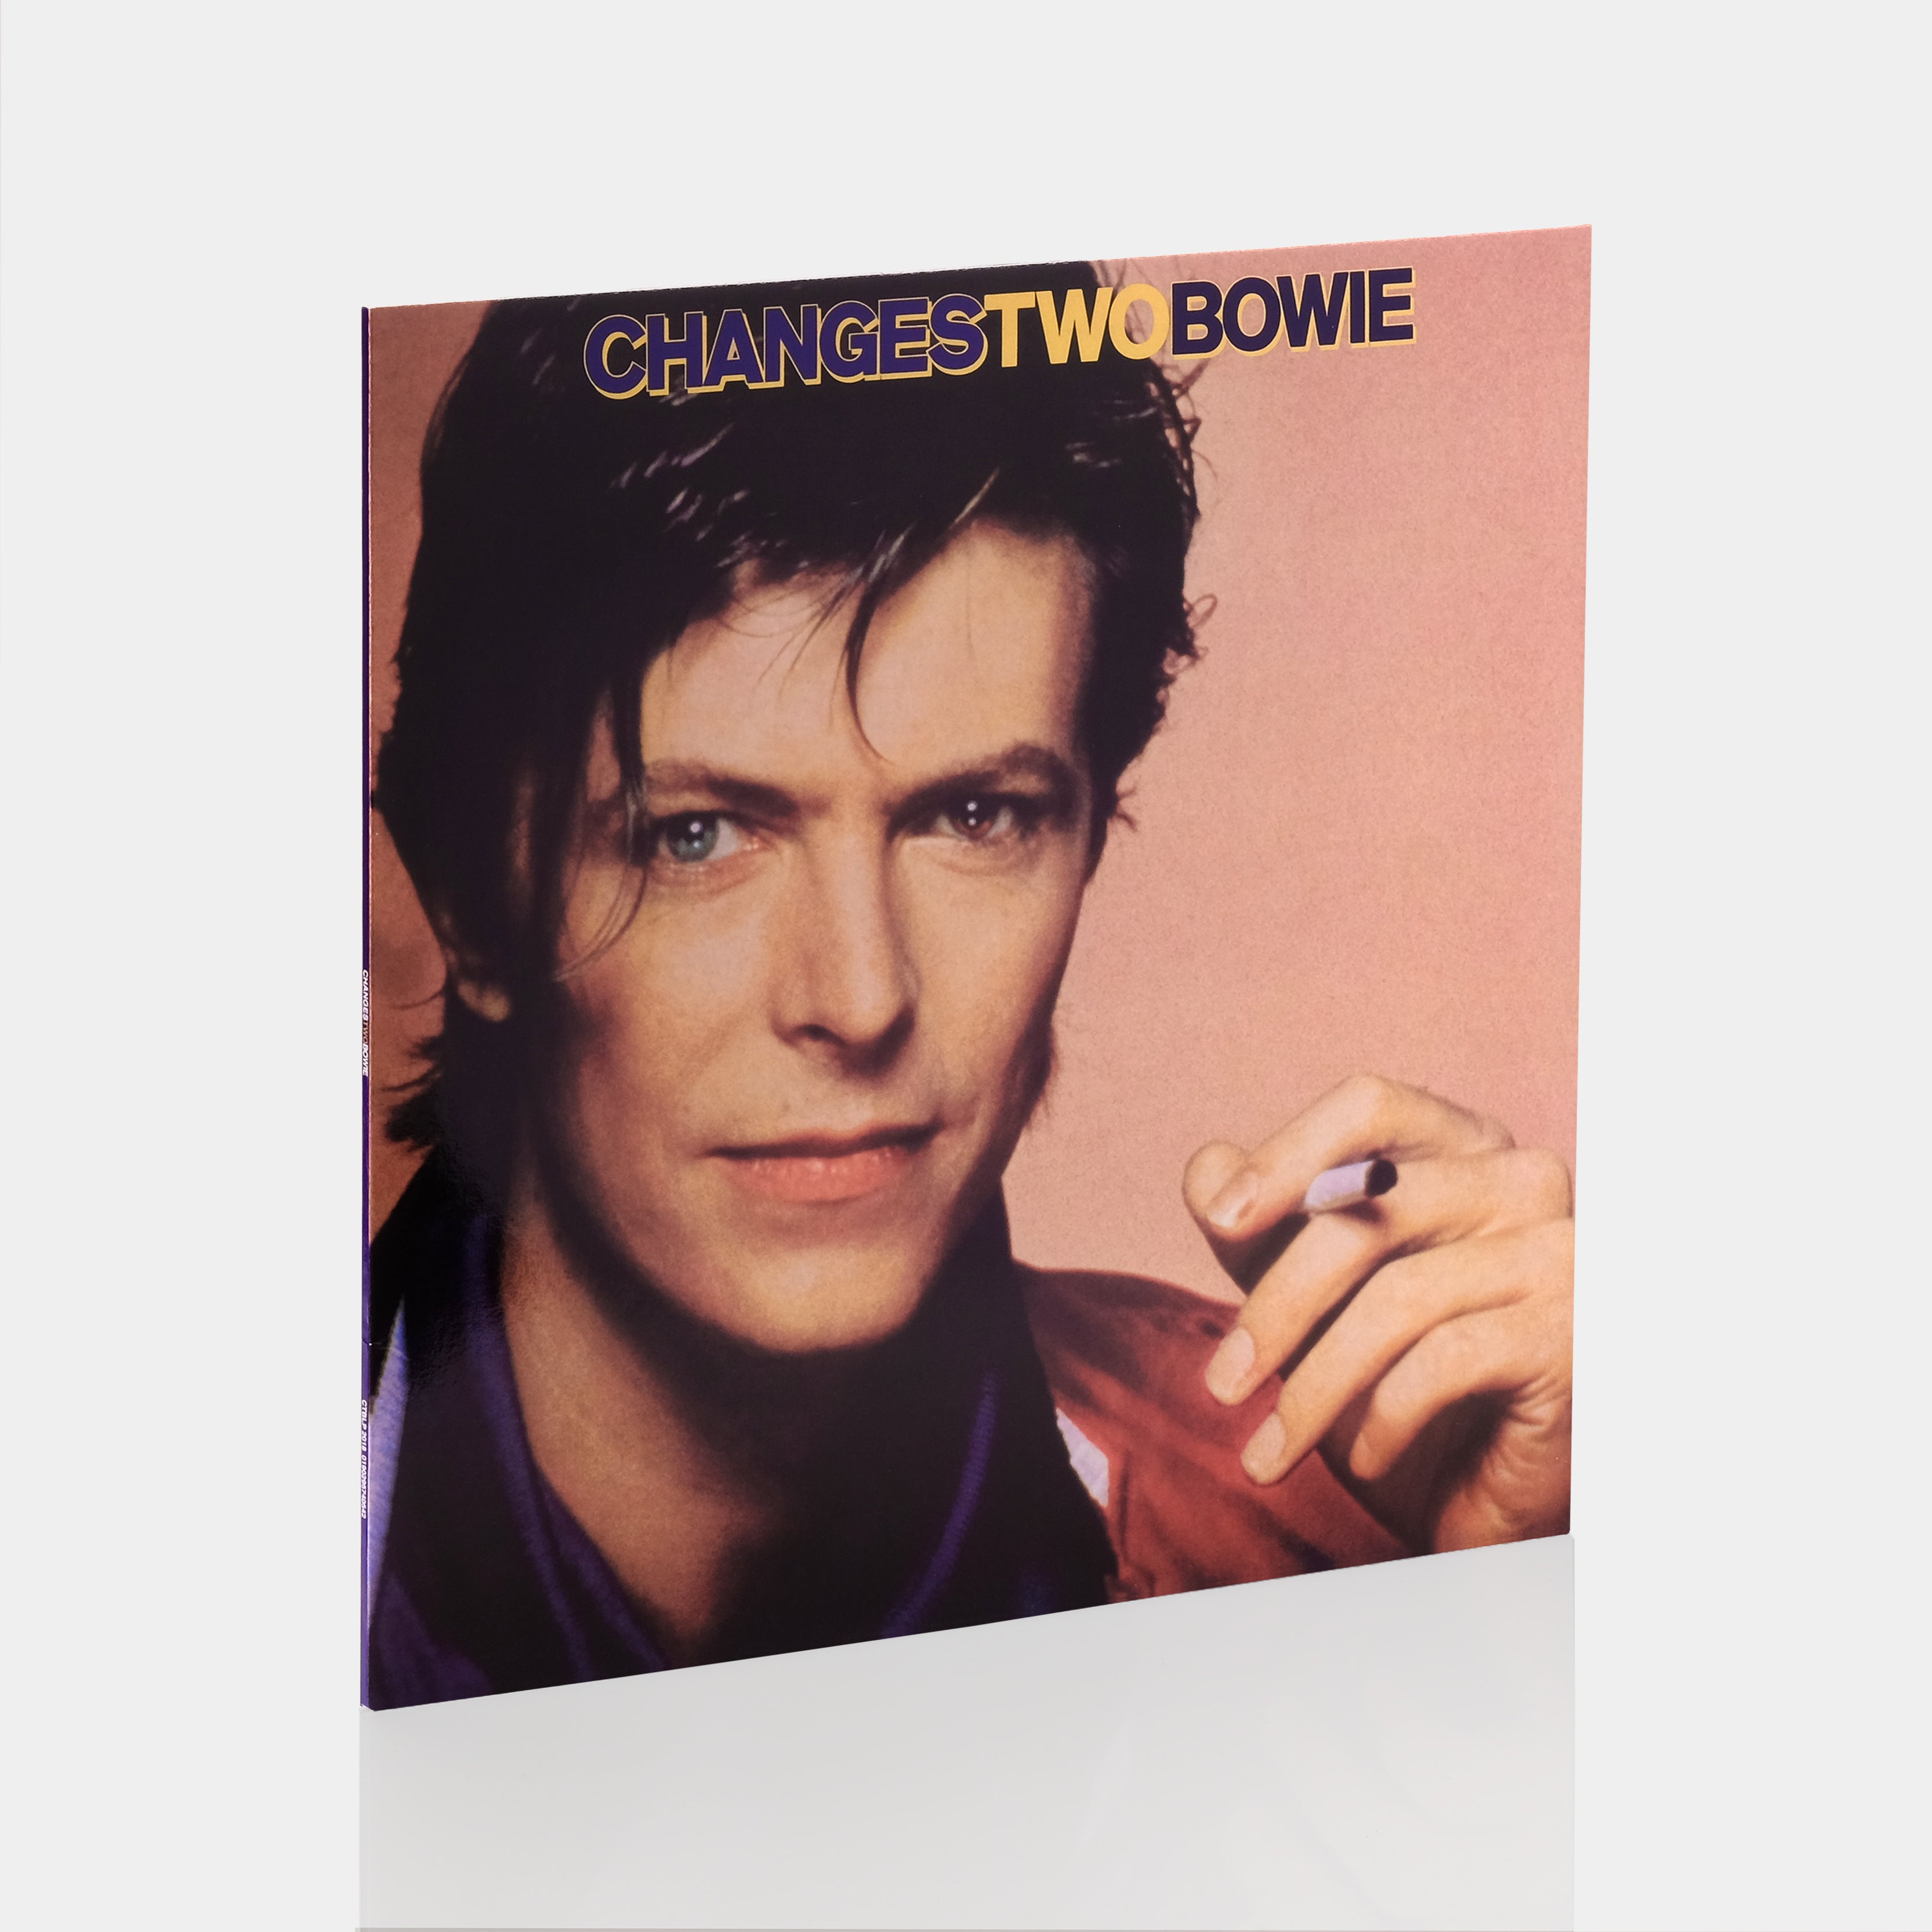 David Bowie - ChangesTwoBowie LP Vinyl Record